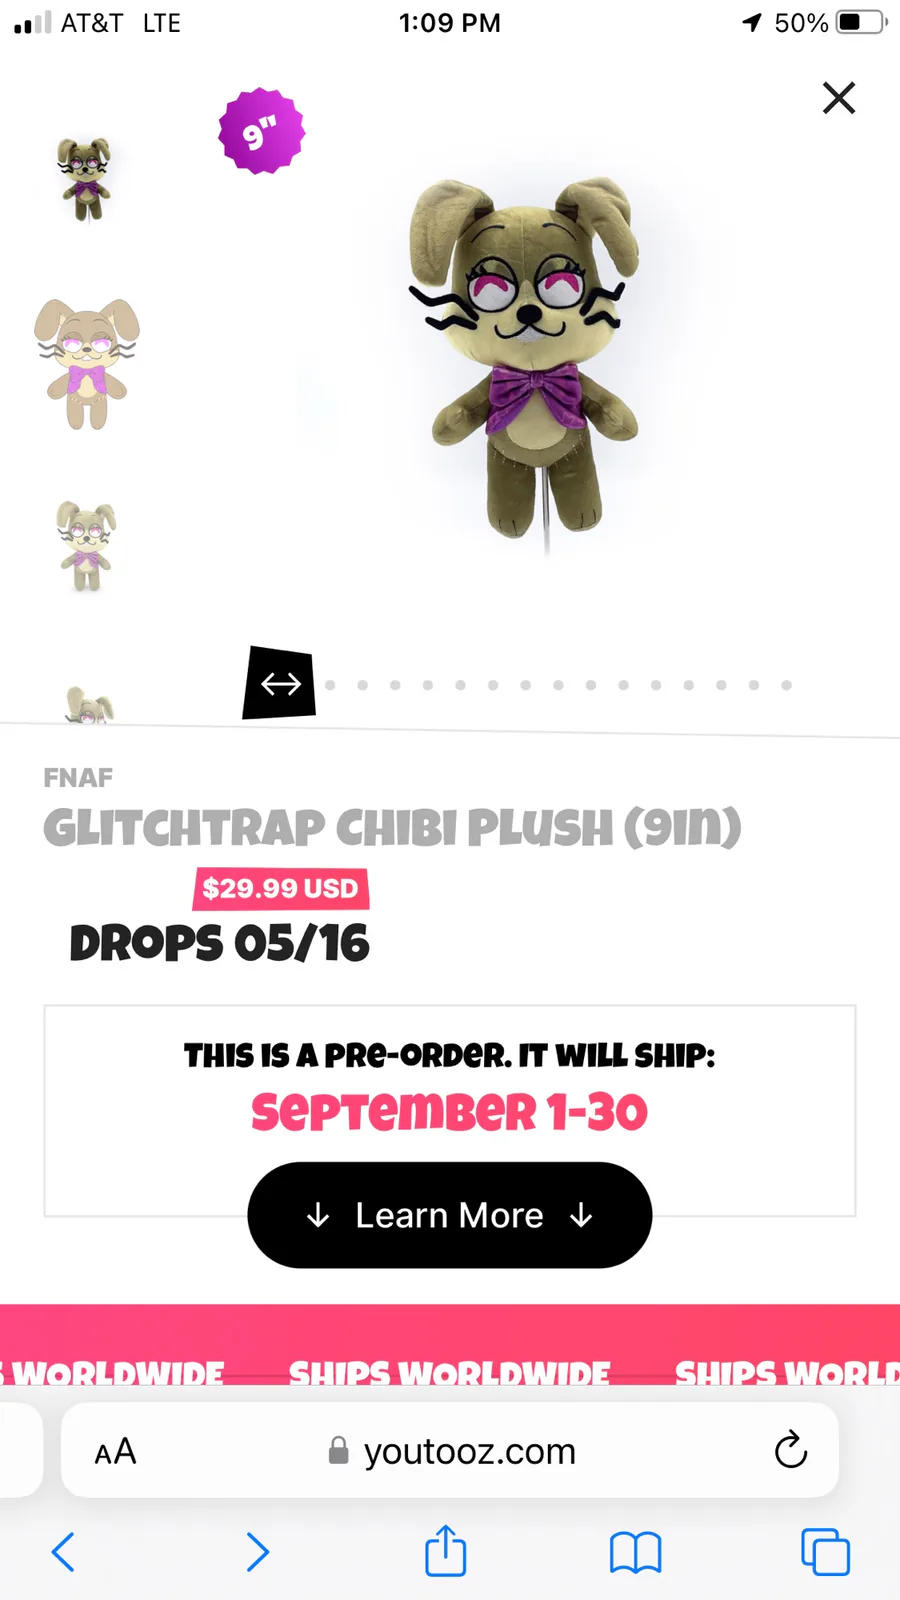 Glitchtrap Chibi Plush (9in)